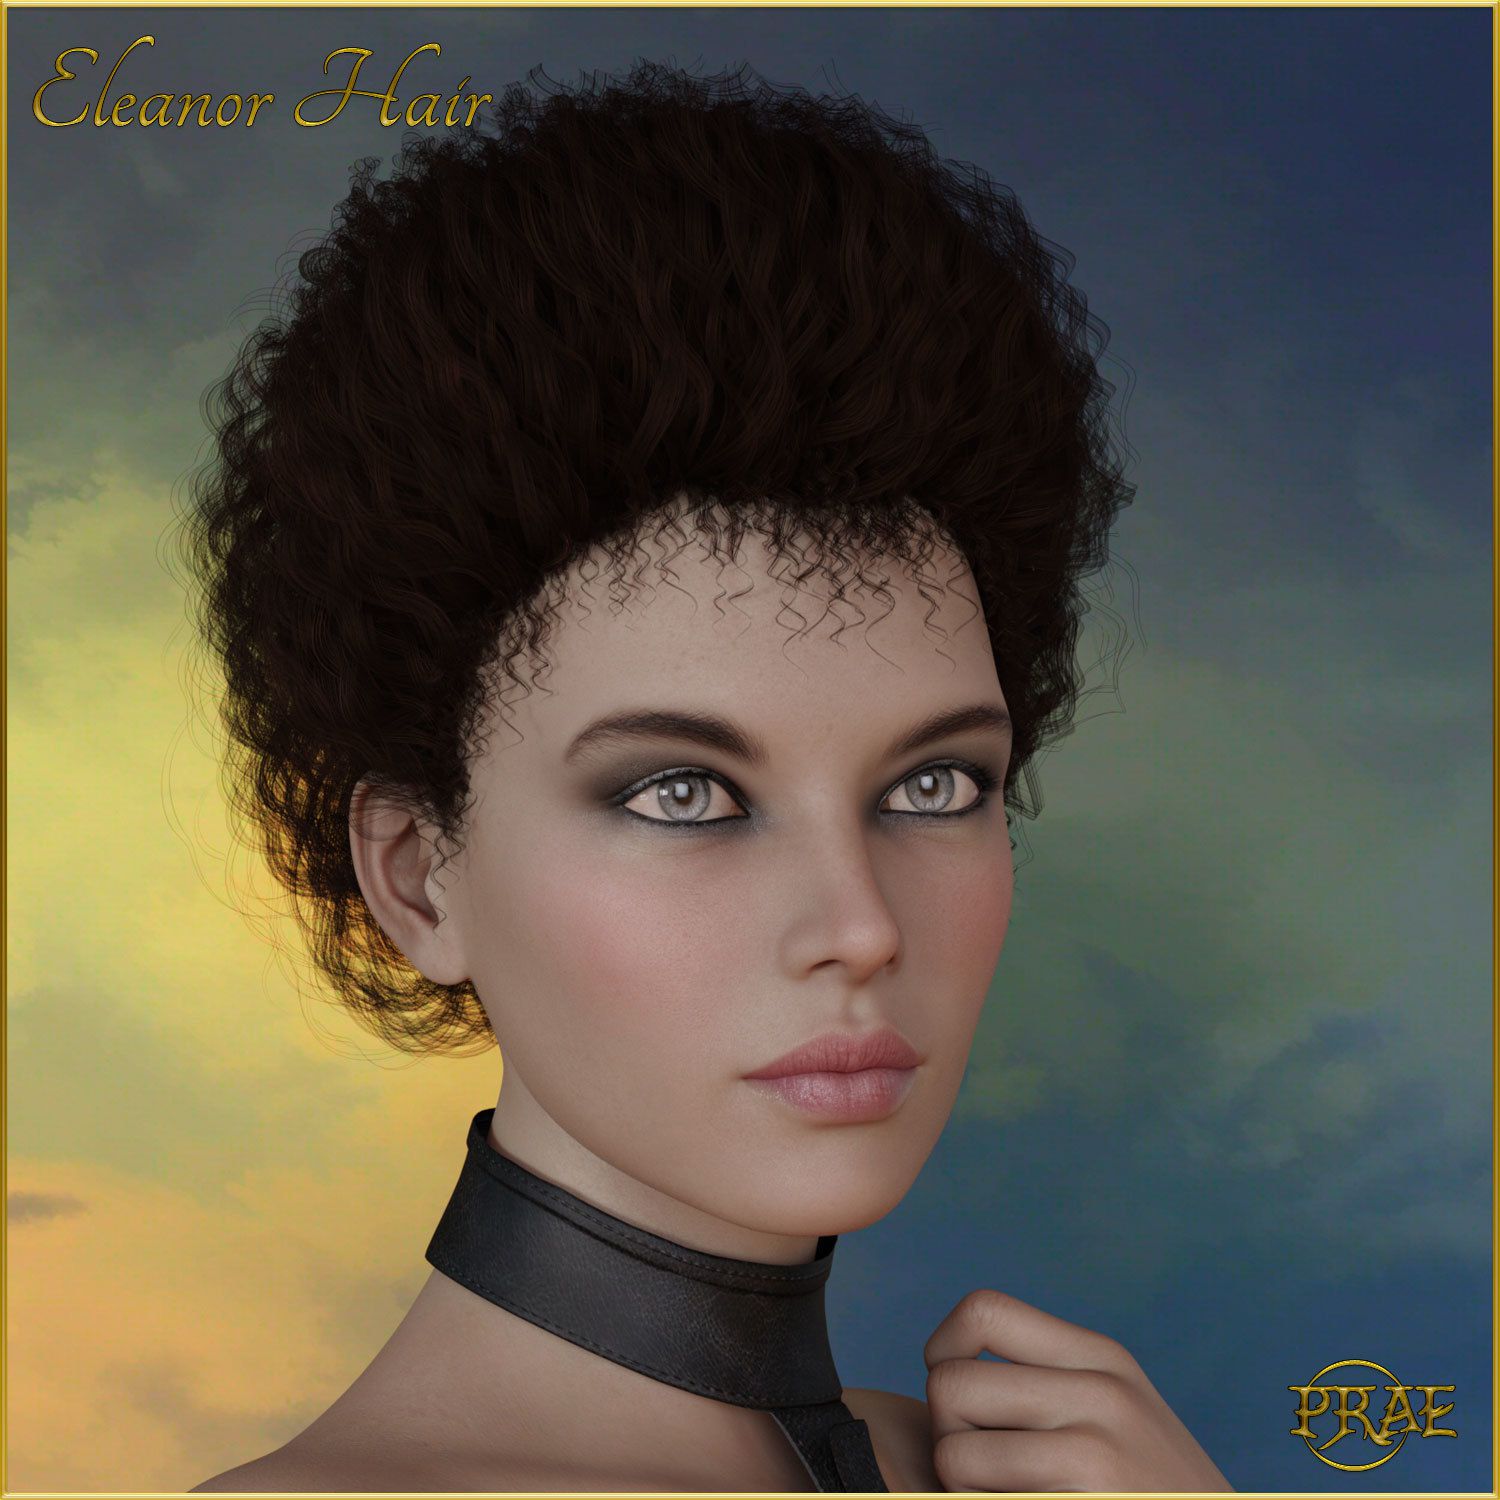 Prae-Eleanor Hair G3/G8 Daz_DAZ3D下载站